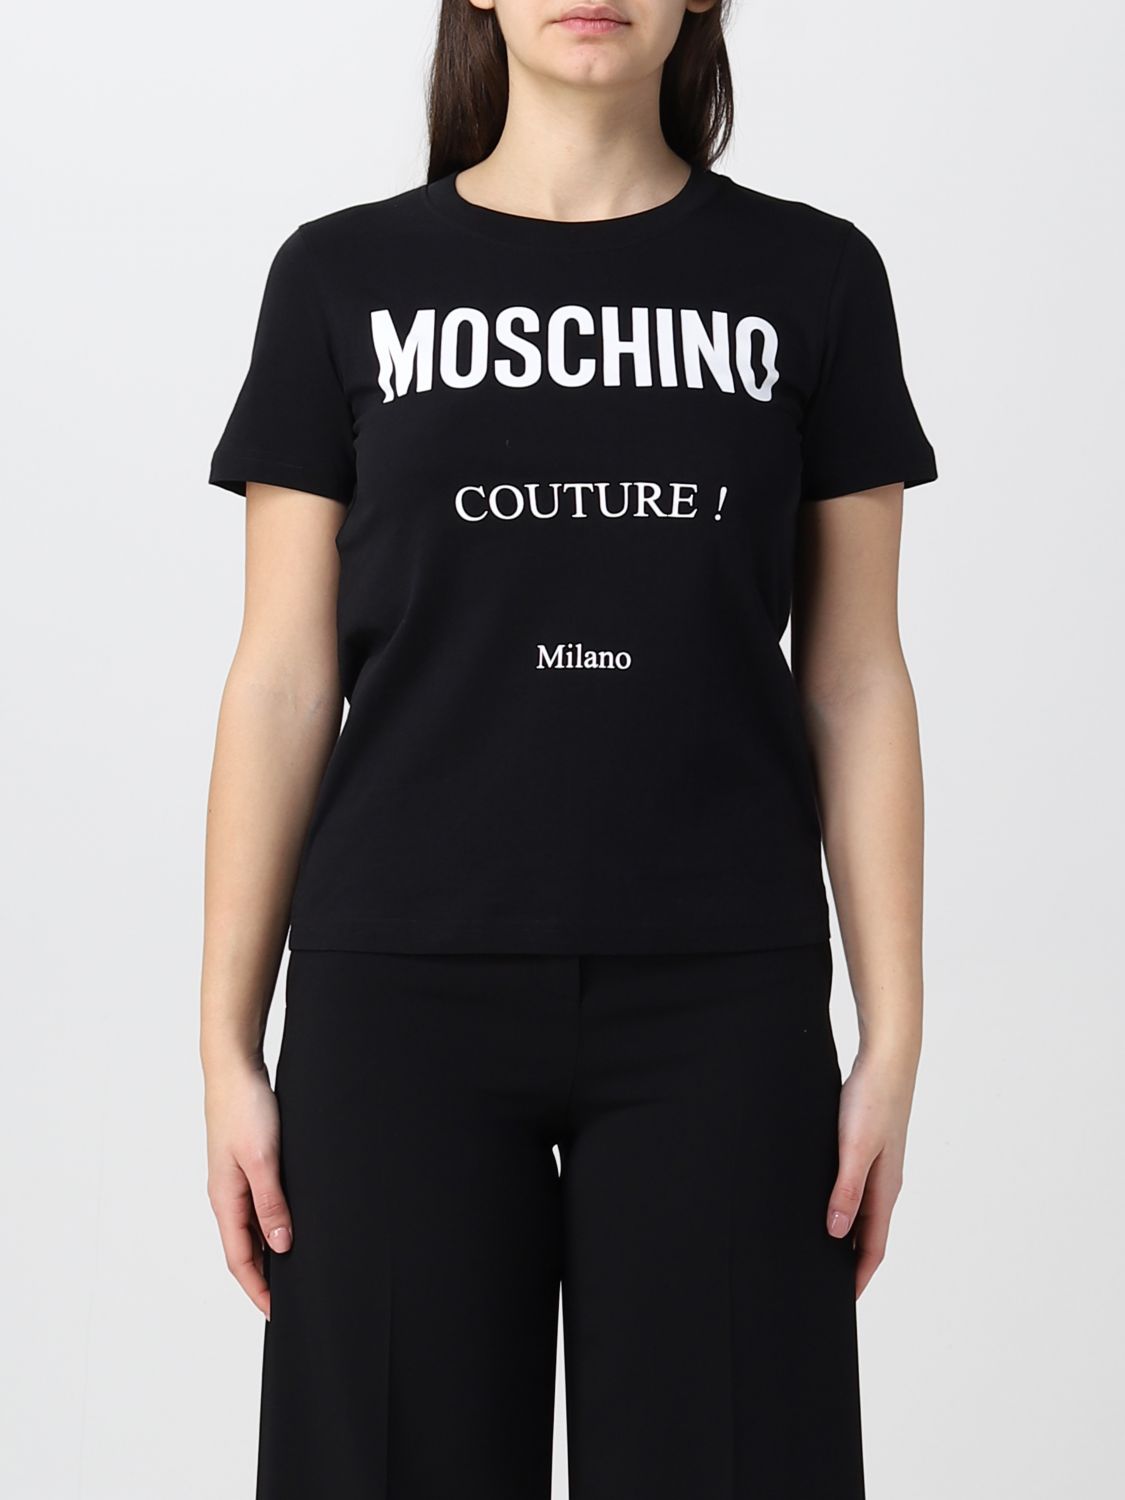 MOSCHINO COUTURE: Camiseta para mujer, Negro | Camiseta Moschino Couture  0715541 en línea en 